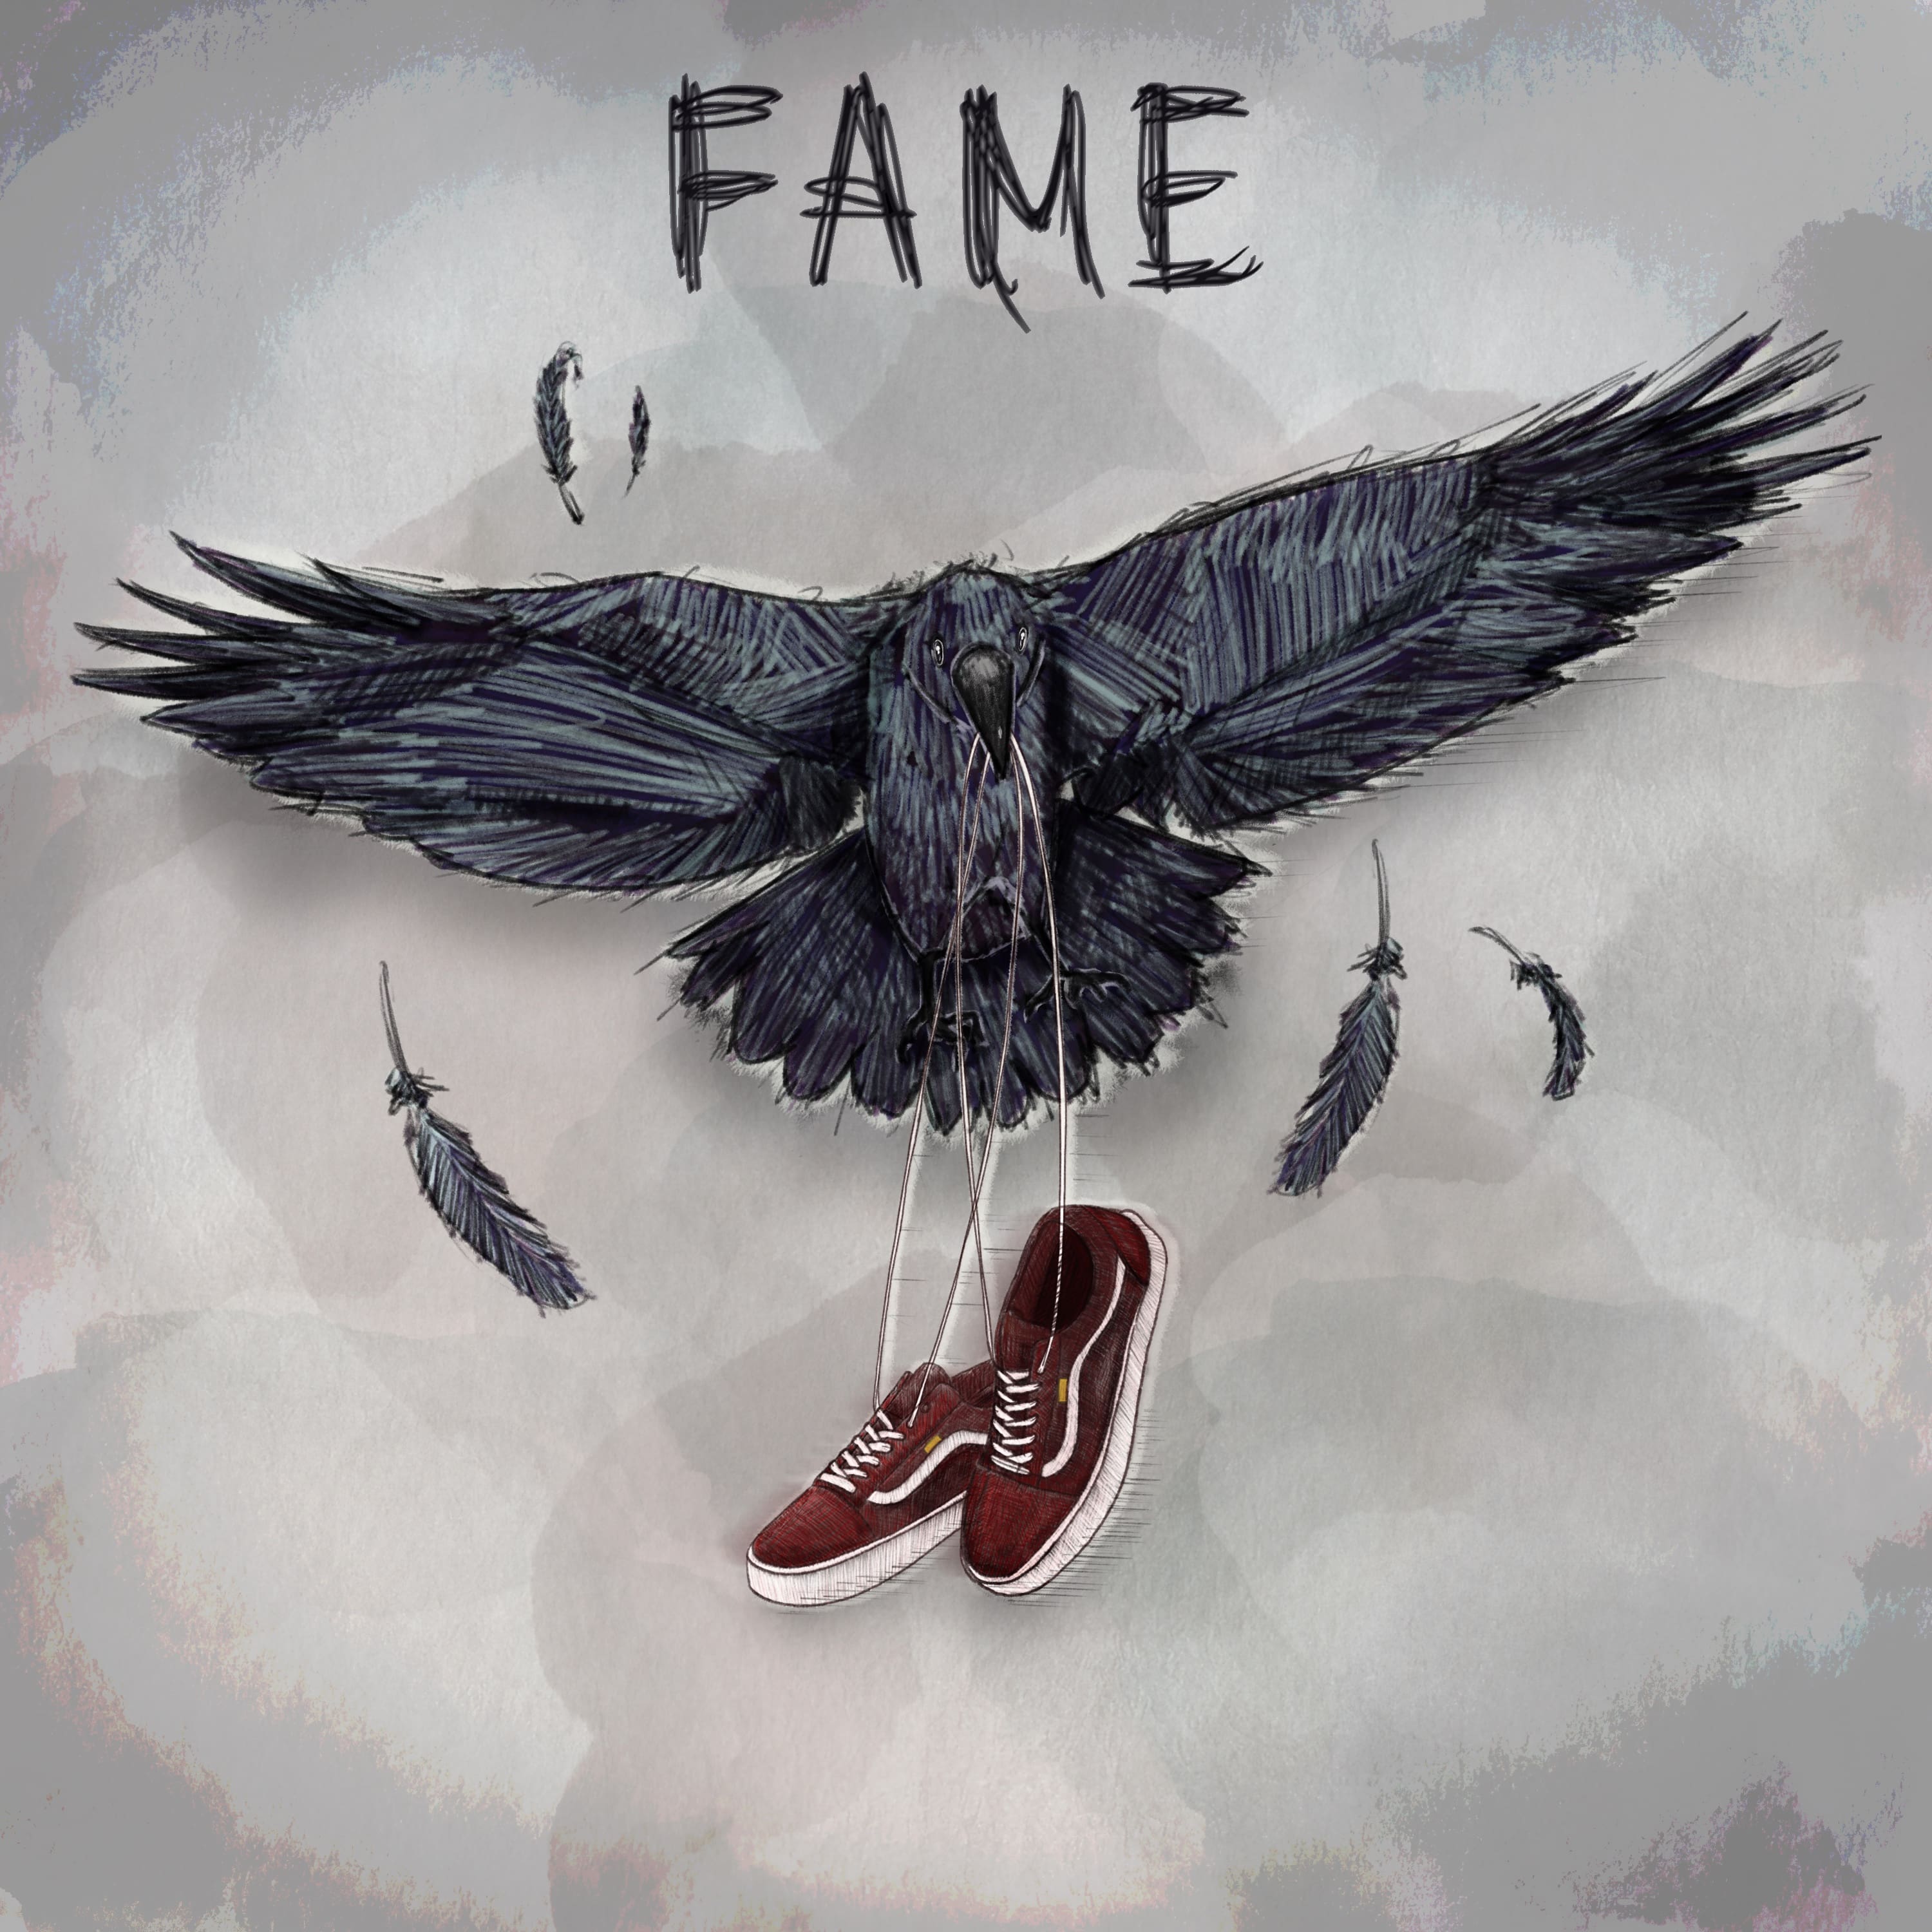 Fame, il nuovo ep degli Urbania [Recensione] 5